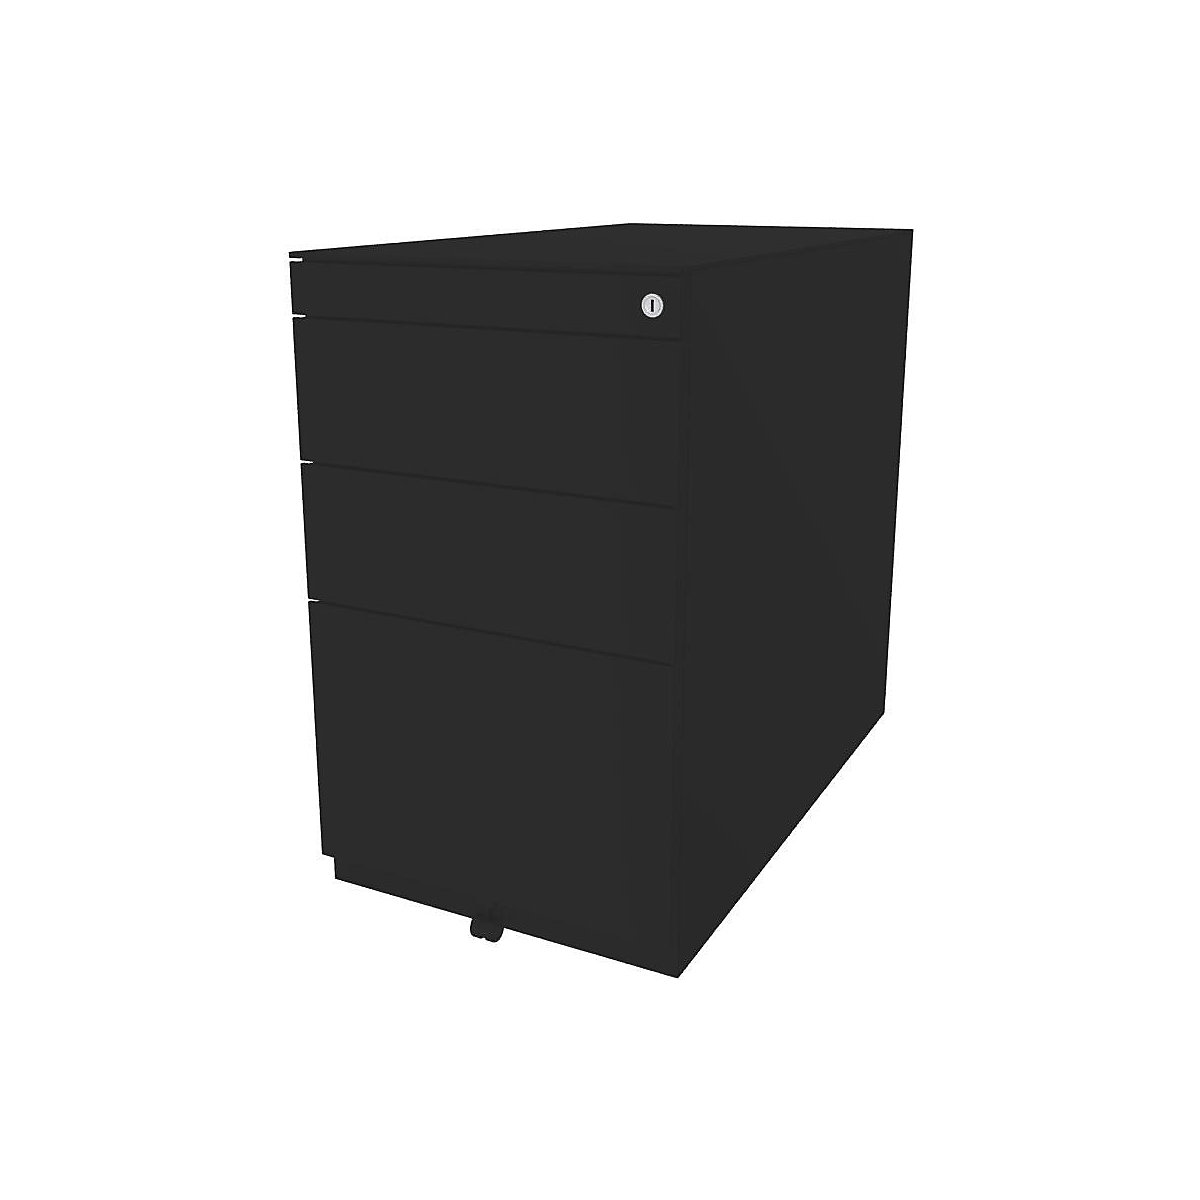 BISLEY Standcontainer Note™, mit 2 Universalschubladen, 1 Hängeregistratur, mit Top, Tiefe 775 mm, schwarz